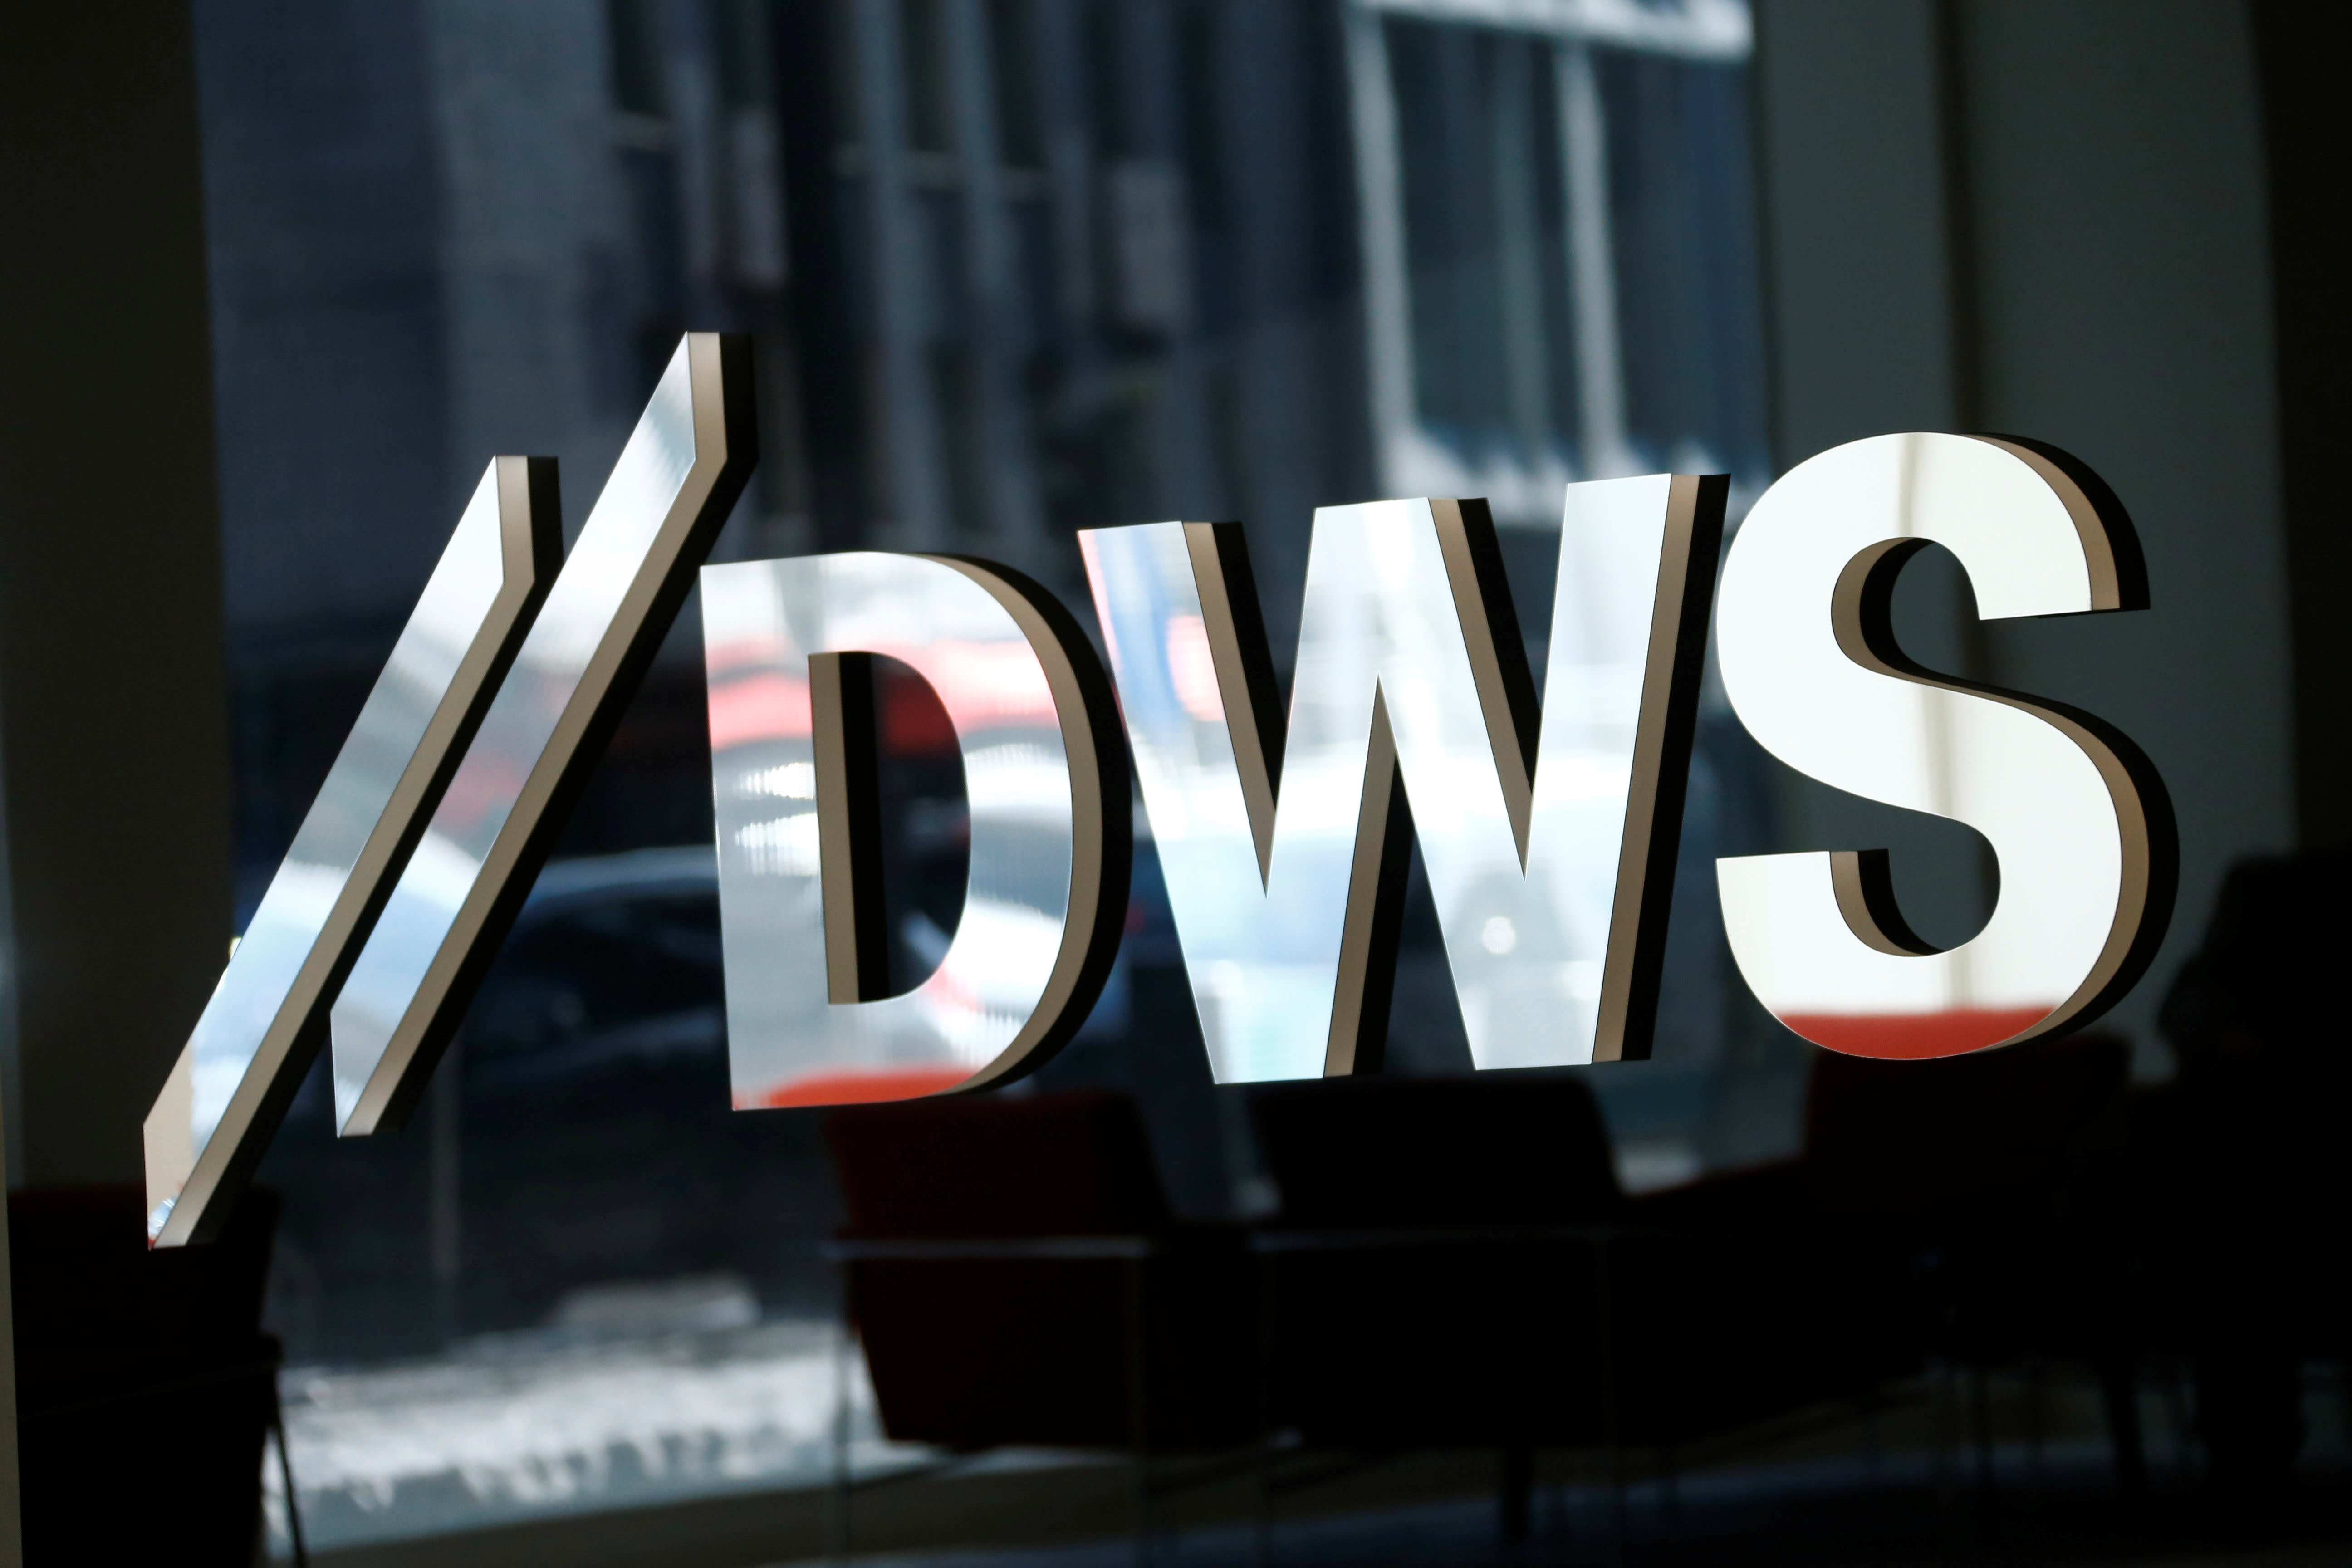 Shares Of Deutsche Bank s DWS Edge Higher In Stock Market Debut